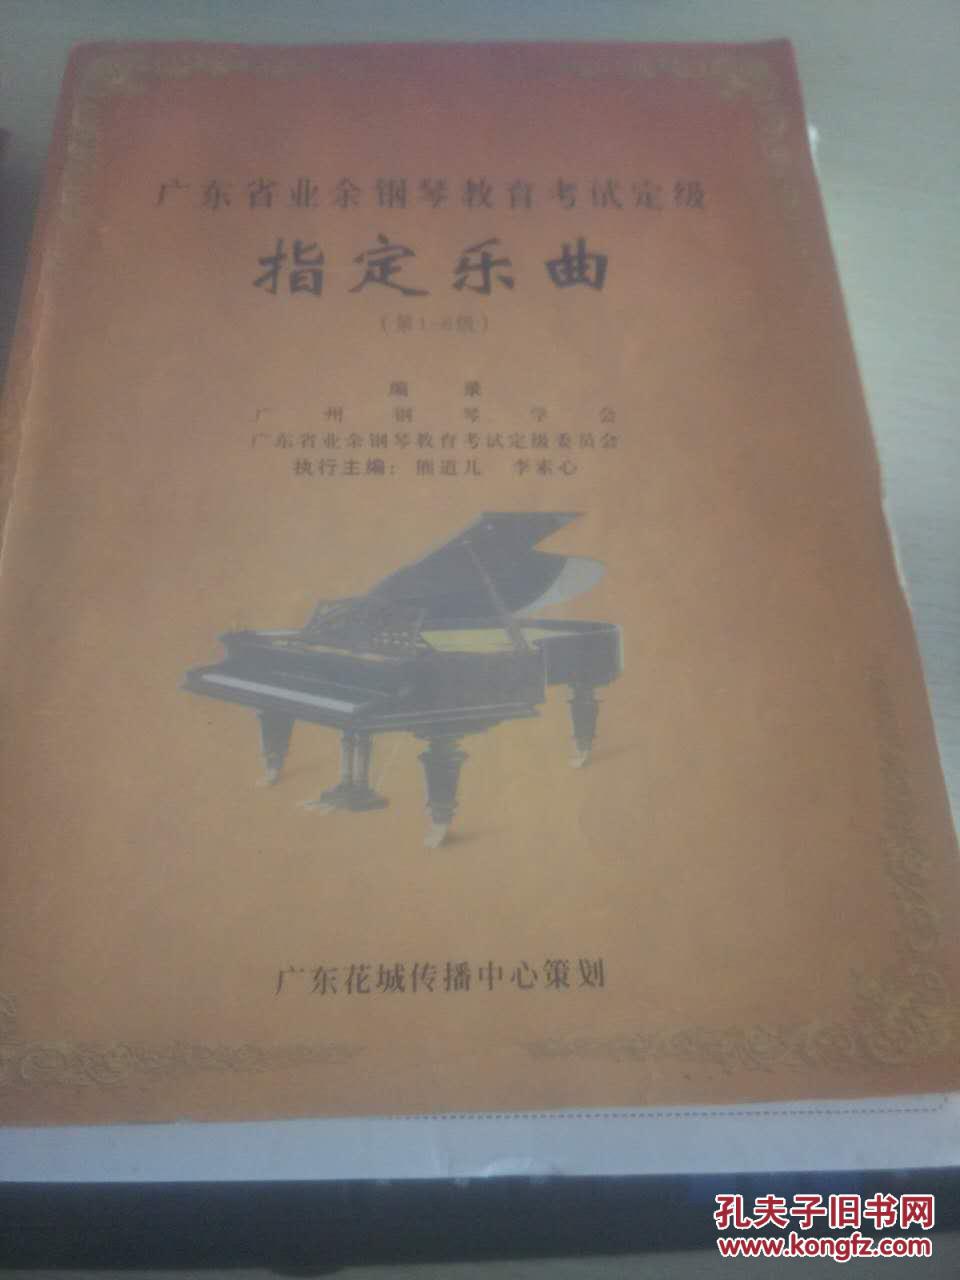 【图】广东省业余钢琴教育考试定级:指定乐曲